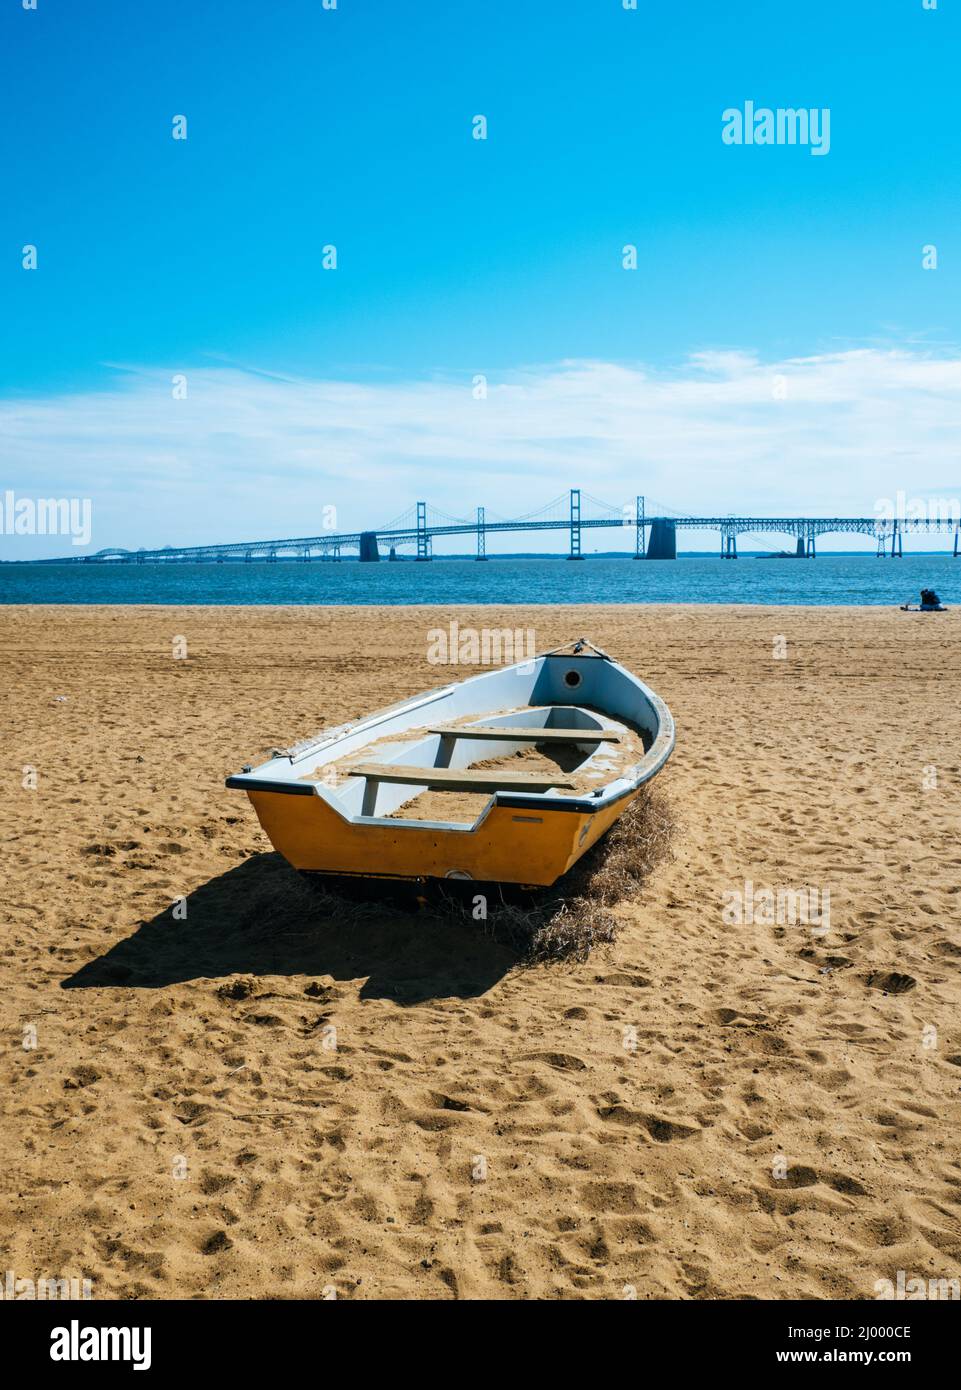 Spiaggia al Sandy Point state Park ad Annapolis, USA, con il Chesapeake Bay Bridge sullo sfondo Foto Stock